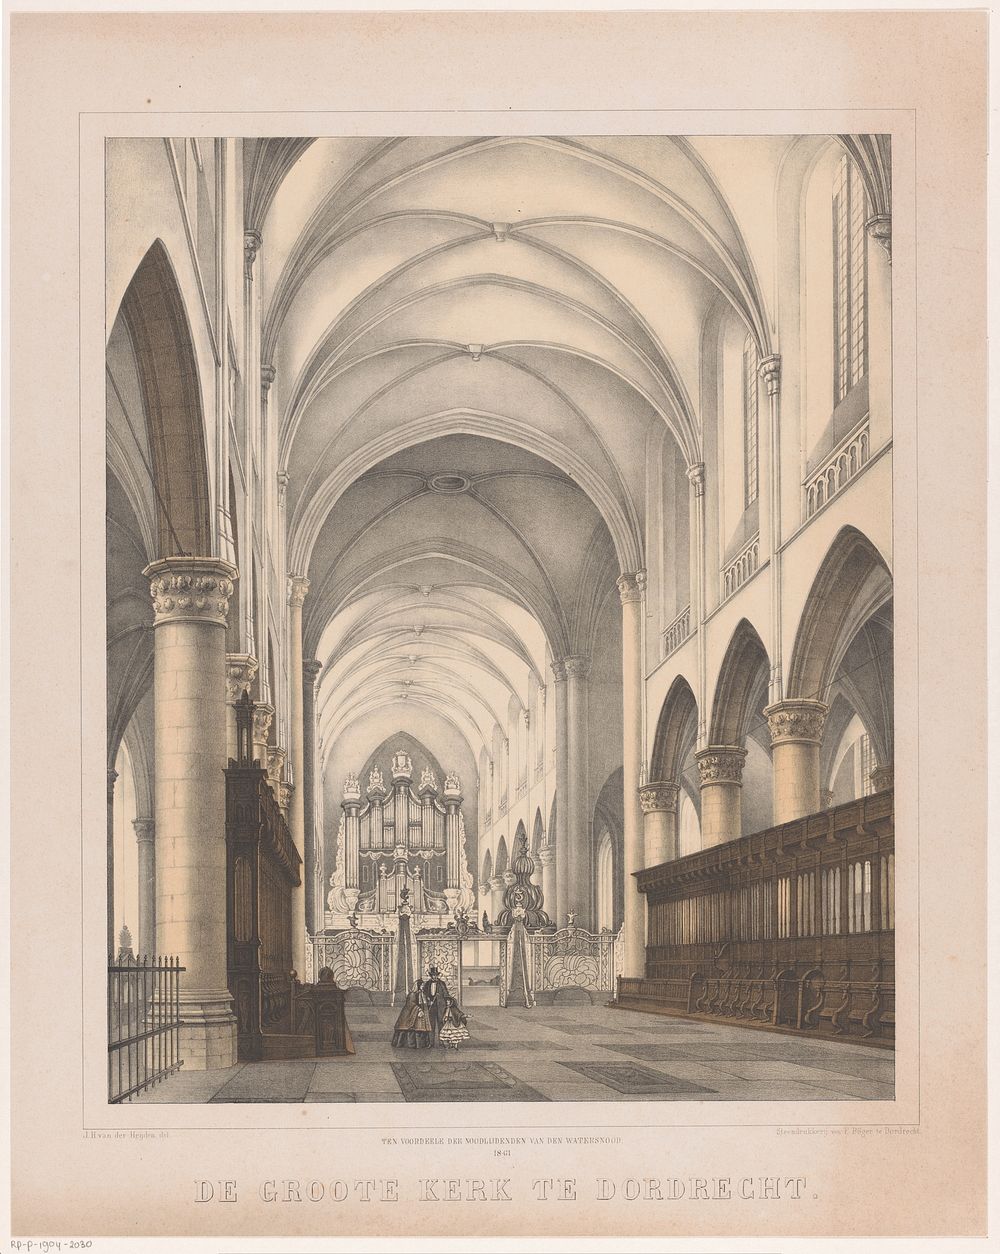 Interieur van de Grote Kerk in Dordrecht (1861) by Johannes Hermanus van der Heijden, Frederik Böger and Frederik Böger